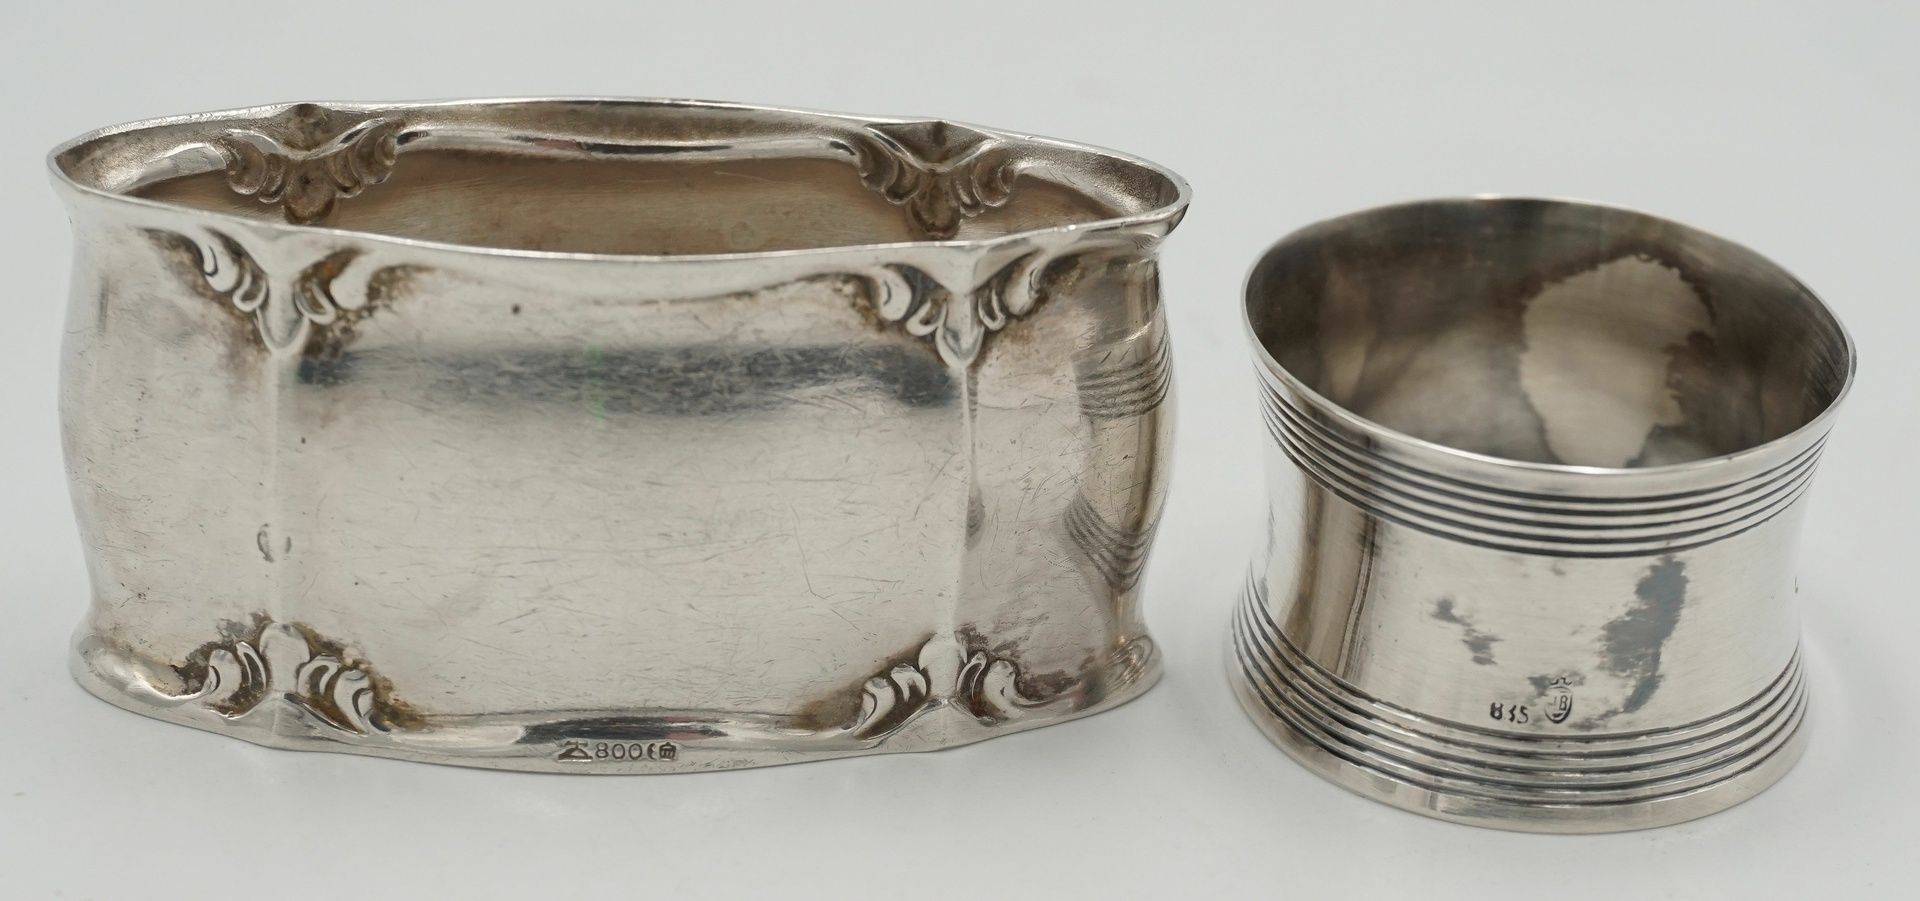 WMF Schälchen mit Glaseinsatz und zwei Serviettenringe aus Silber - Image 4 of 4